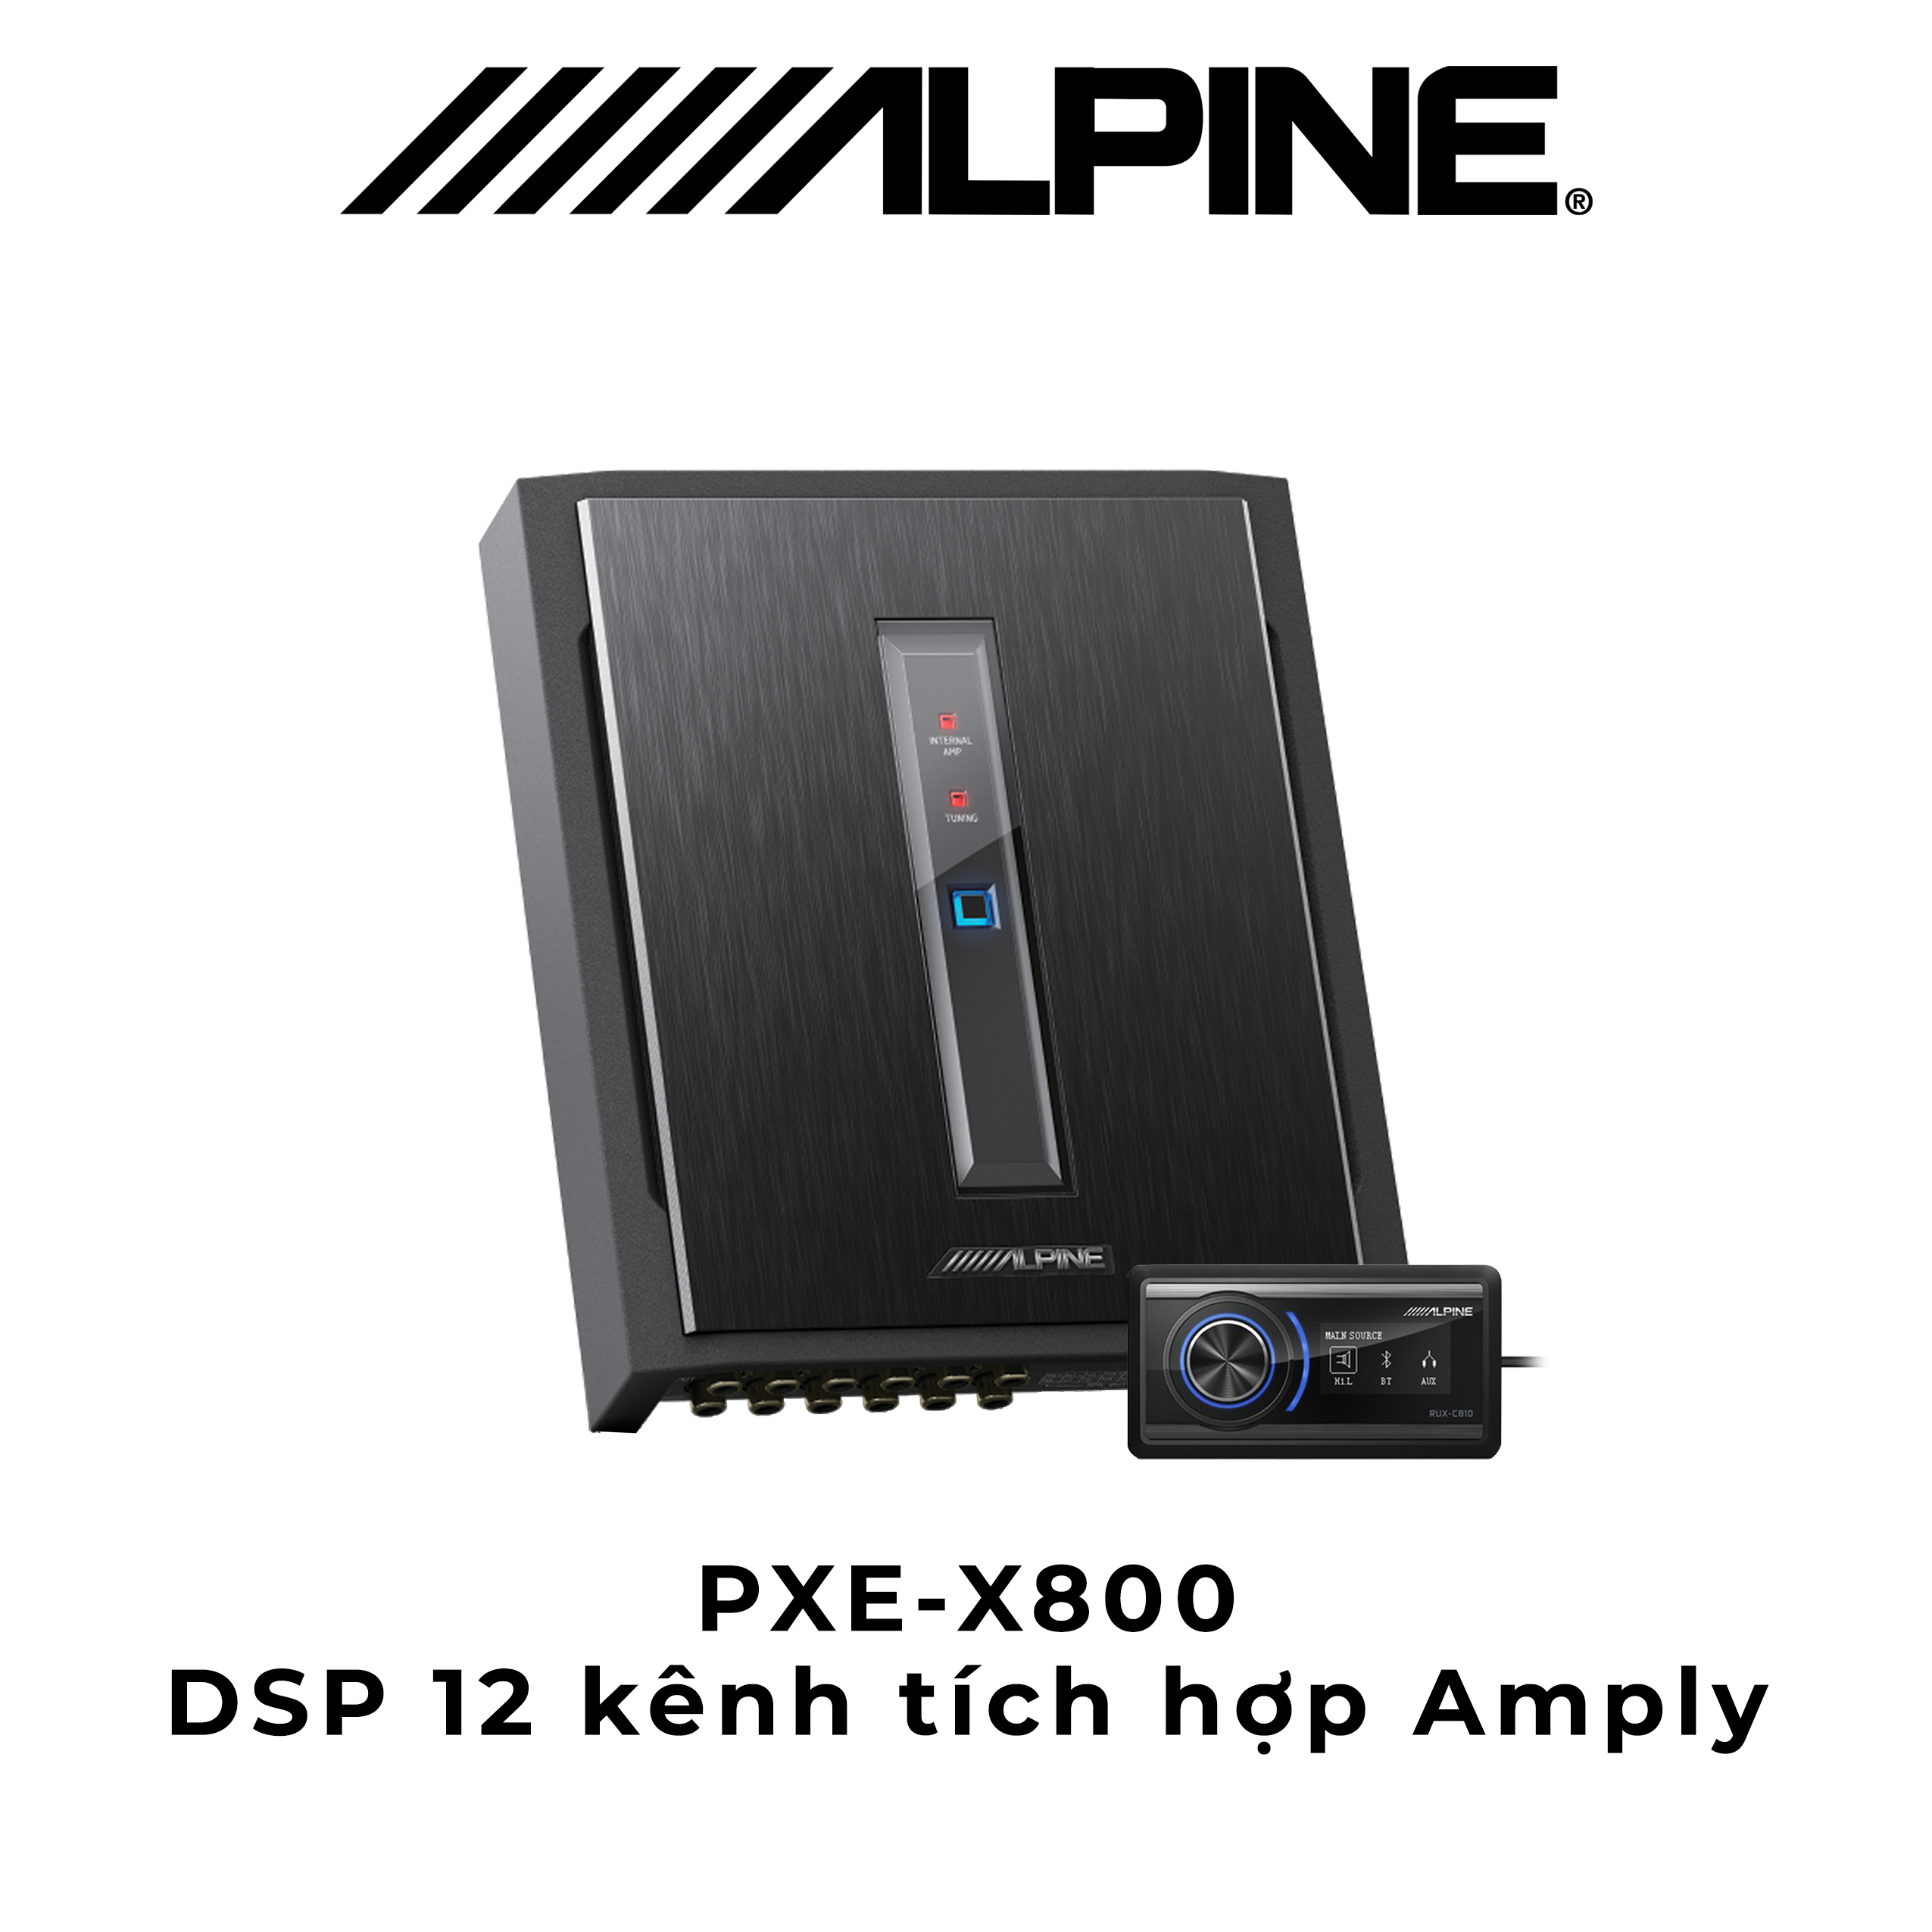 PXE-X800 Bộ xử lý DSP 12 kênh tích hợp Amply chính hãng Alpine